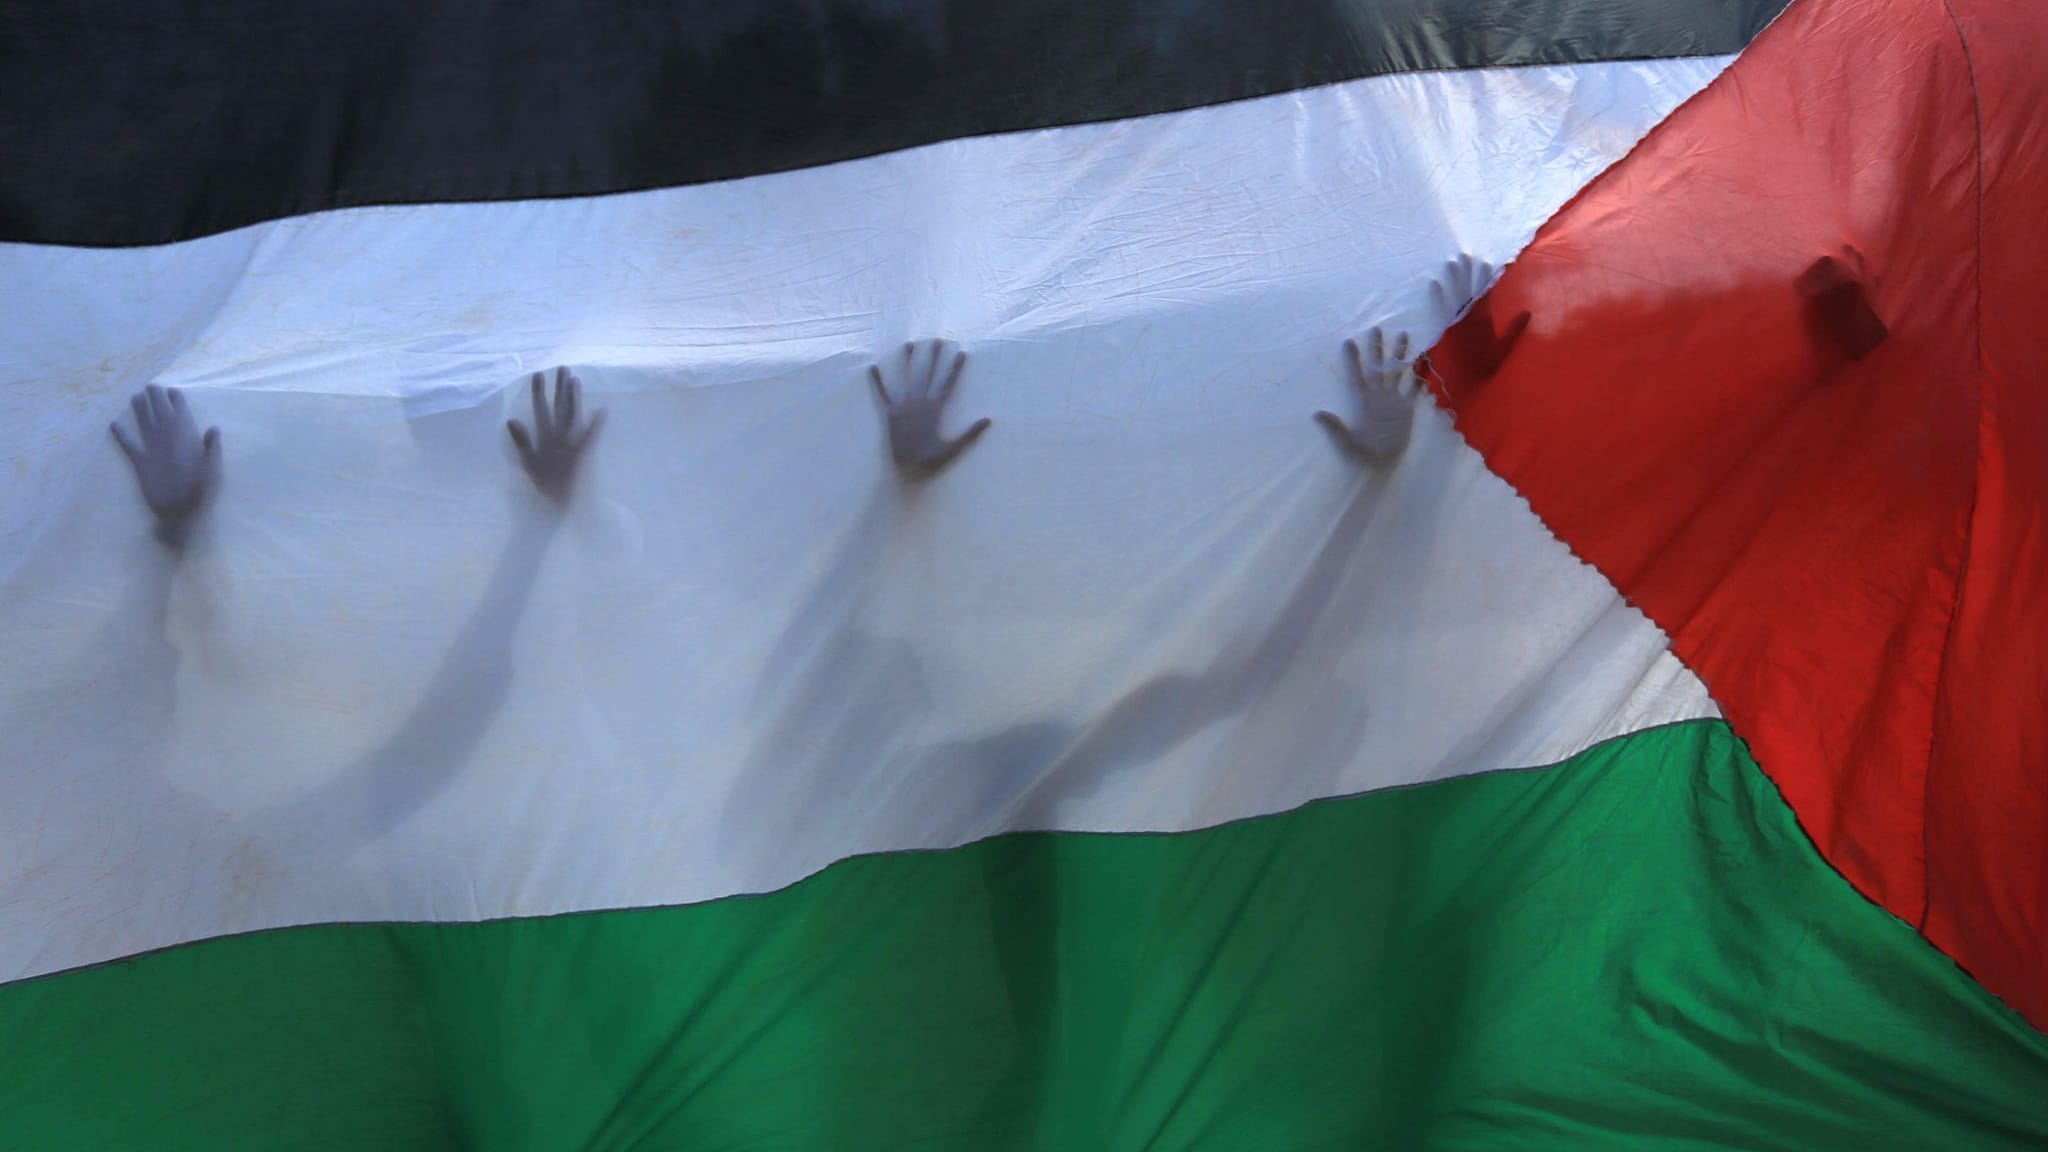 Norwegen, Irland und Spanien erkennen Palästina als Staat an